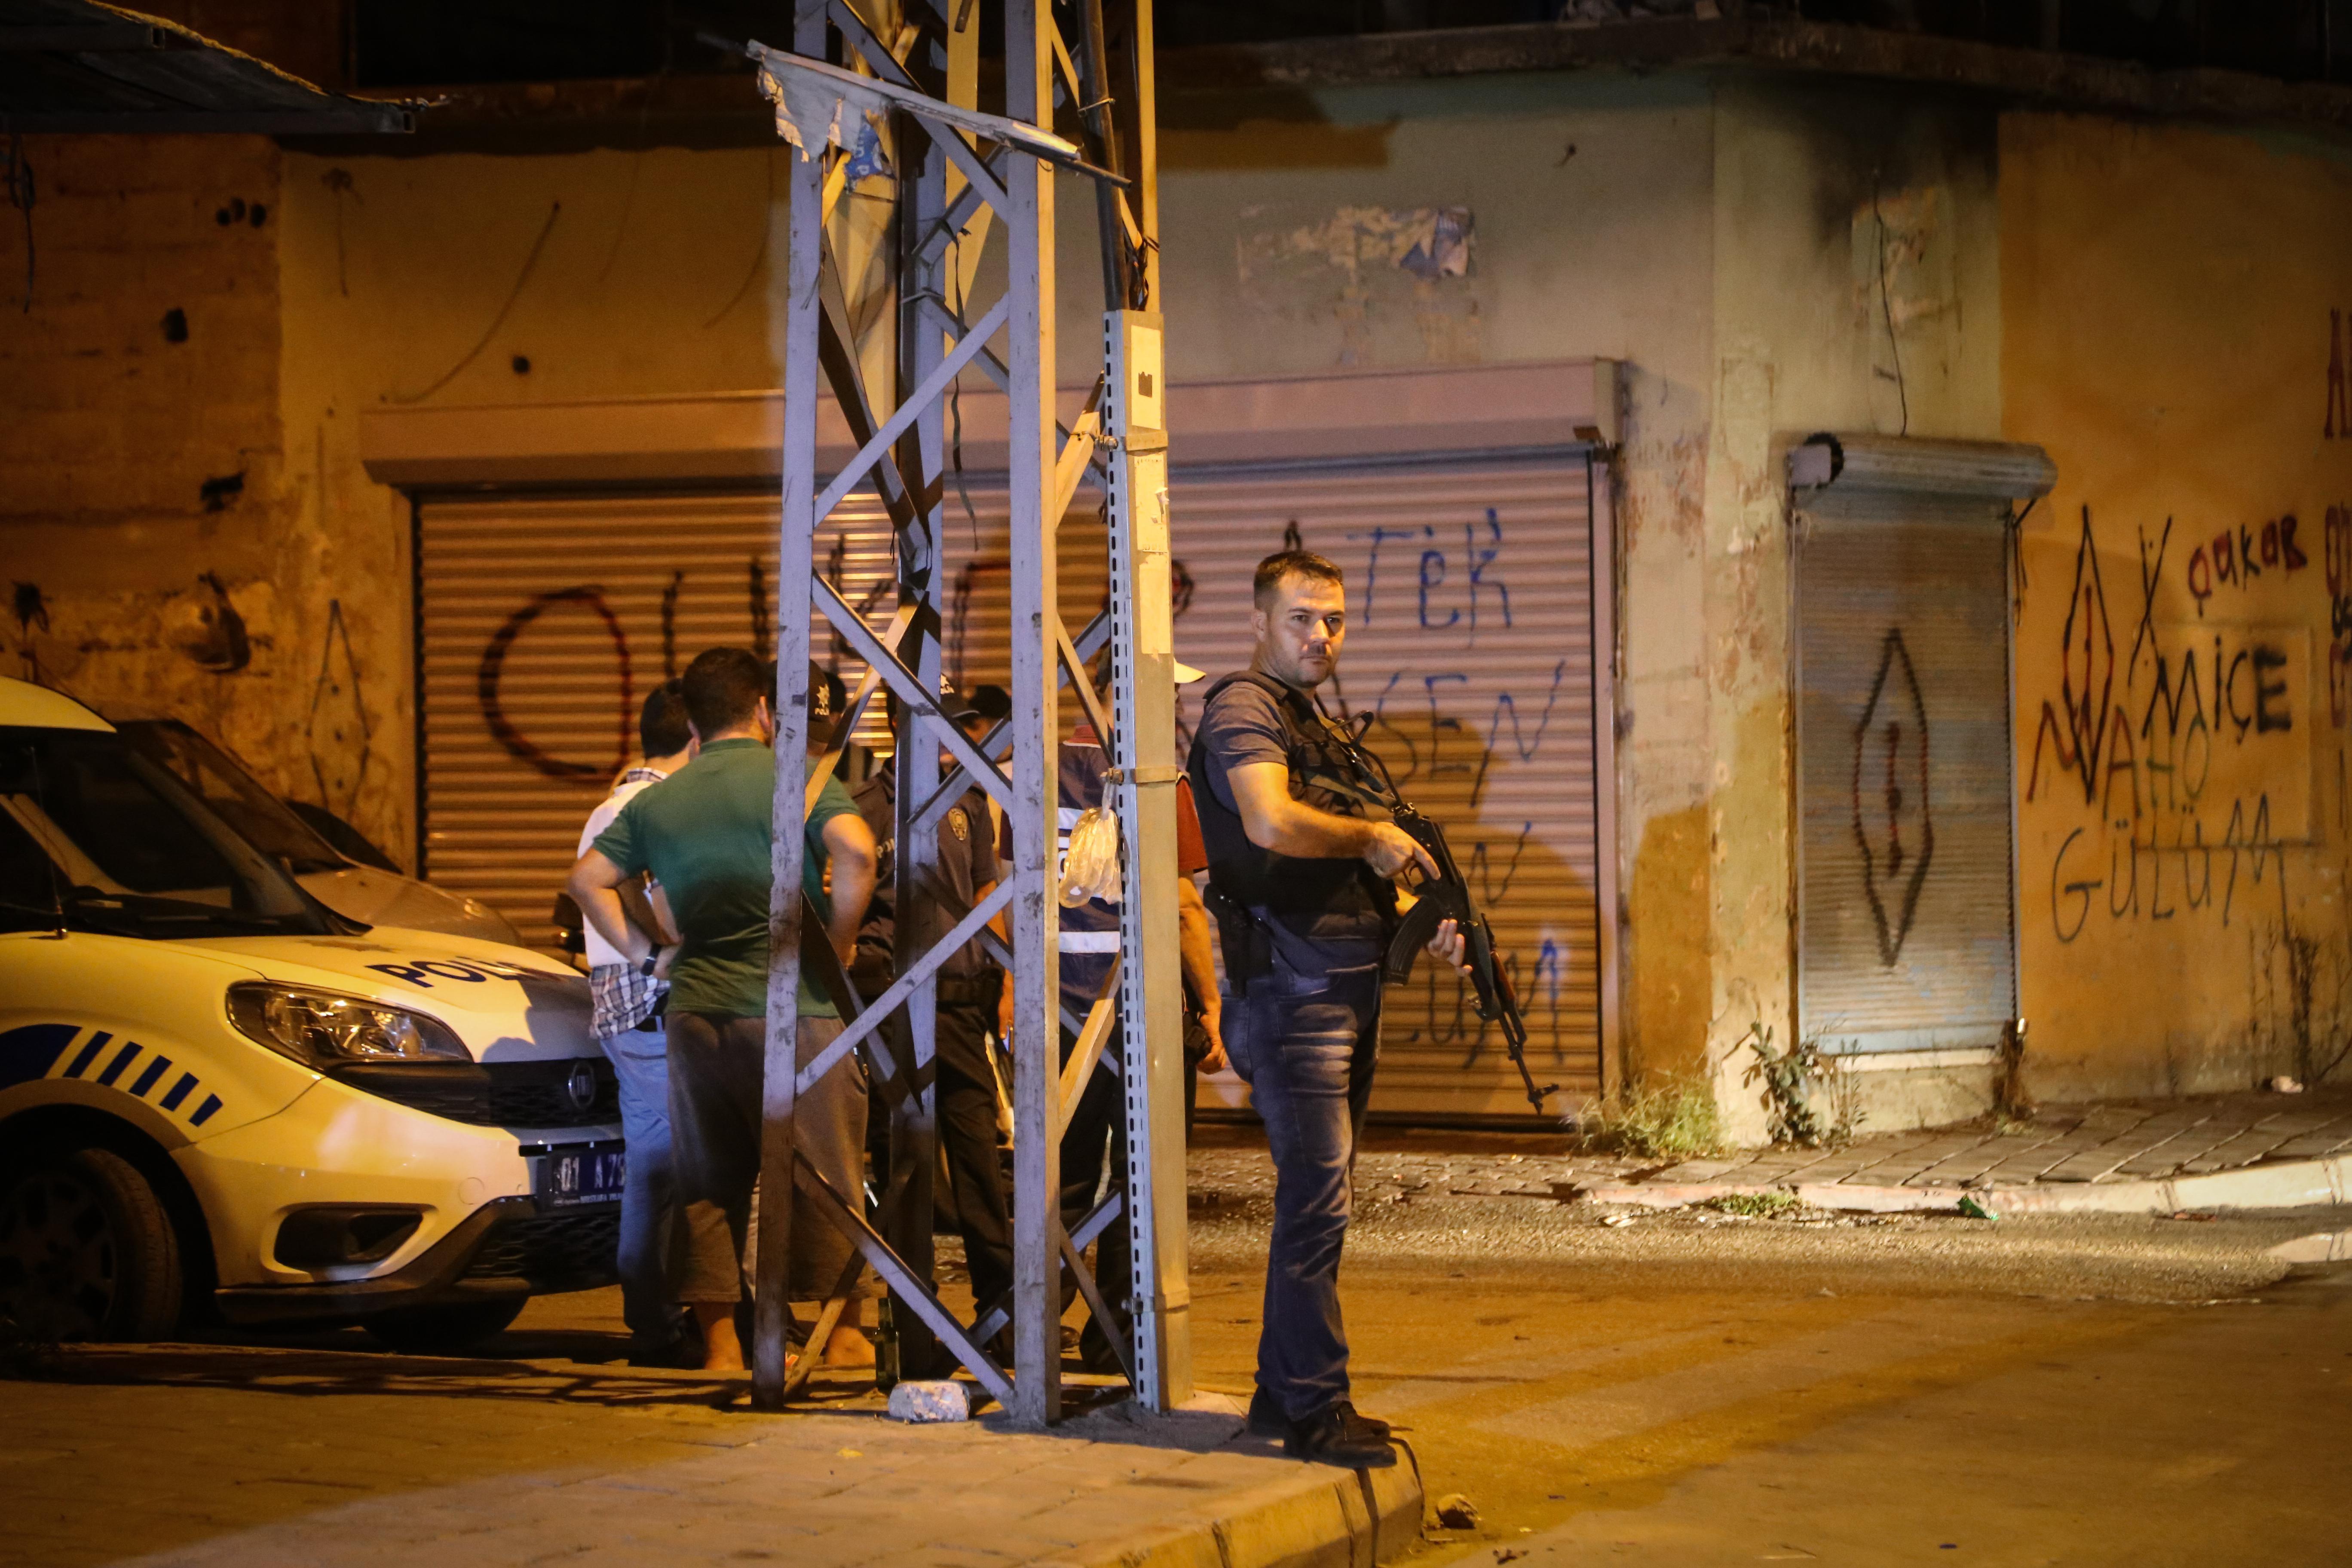 Adanada asayiş uygulamasında ele geçirildi: Kişisel olaylara müdahale aracı